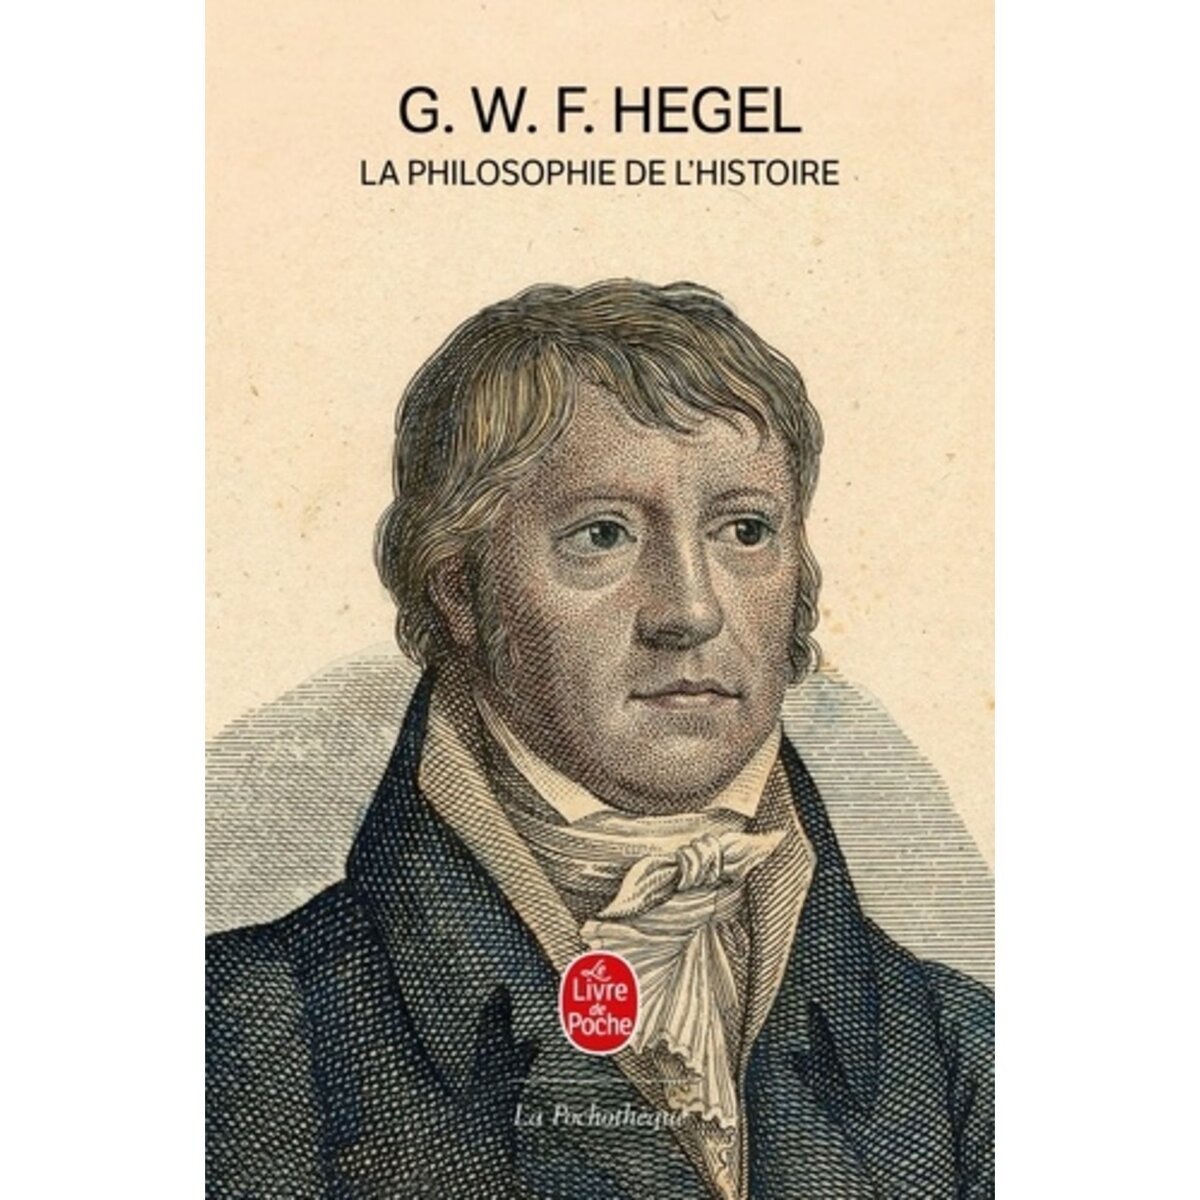  LA PHILOSOPHIE DE L'HISTOIRE, Hegel Georg Wilhelm Friedrich